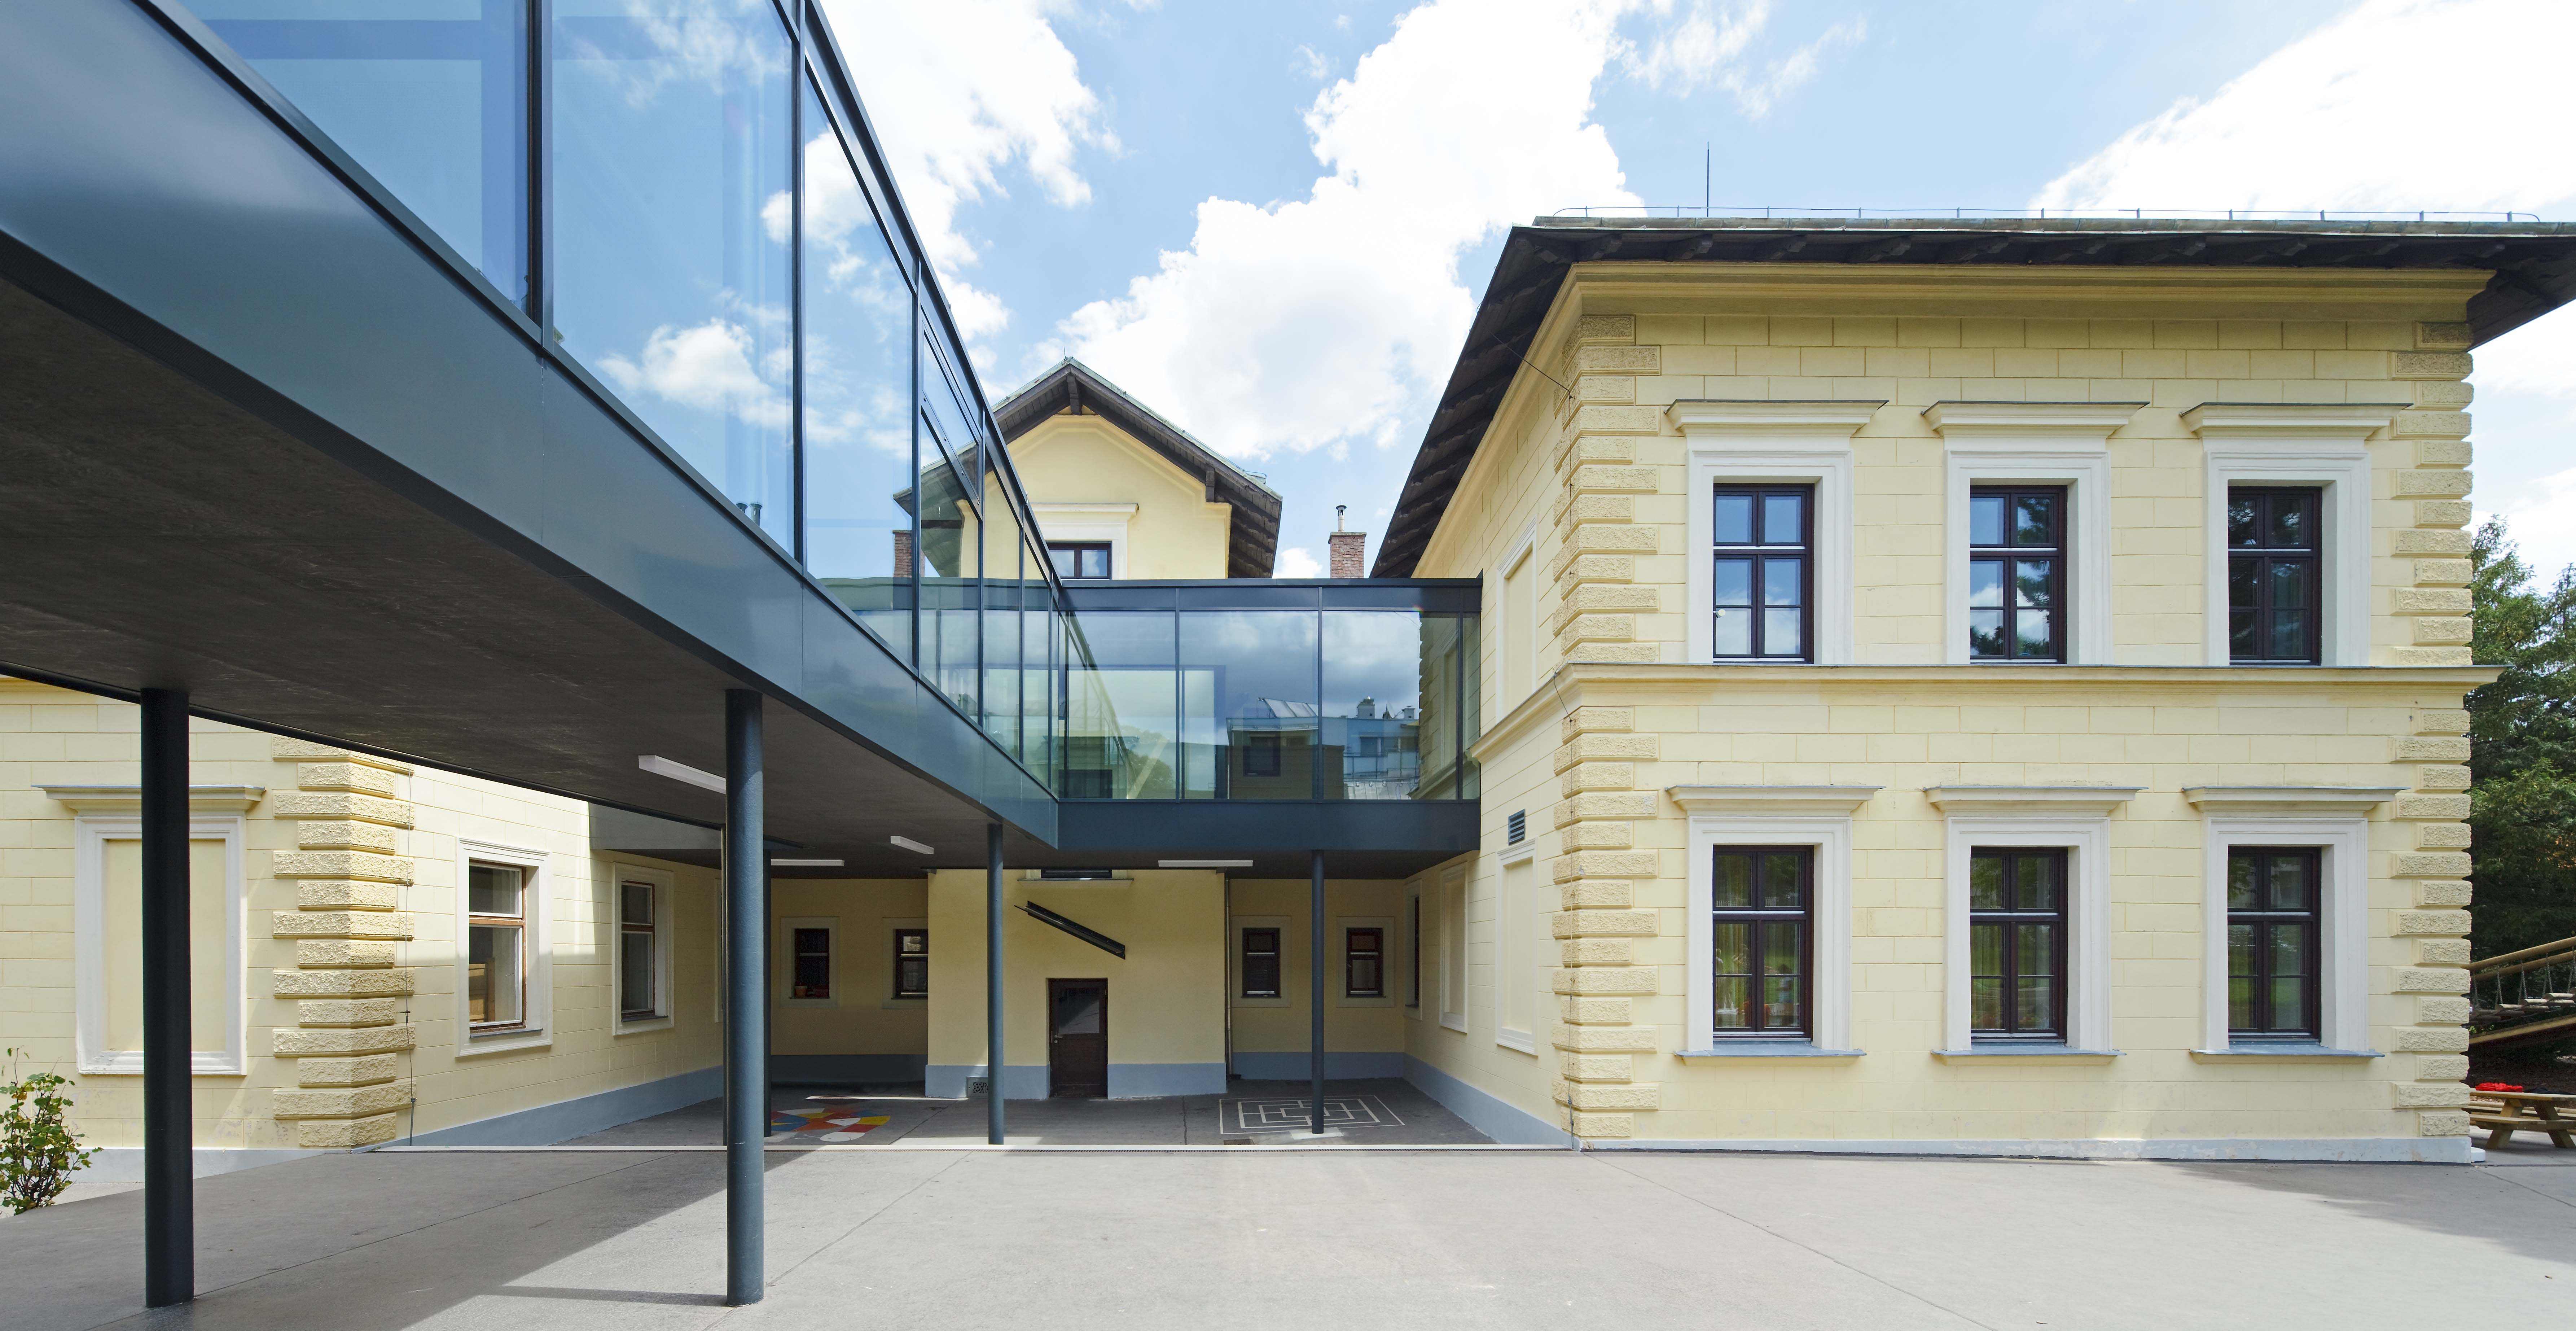 Blick auf das historische Schulgebäude und den verglasten Verbindungsgang zum neuen Bauteil der Schulerweiterung